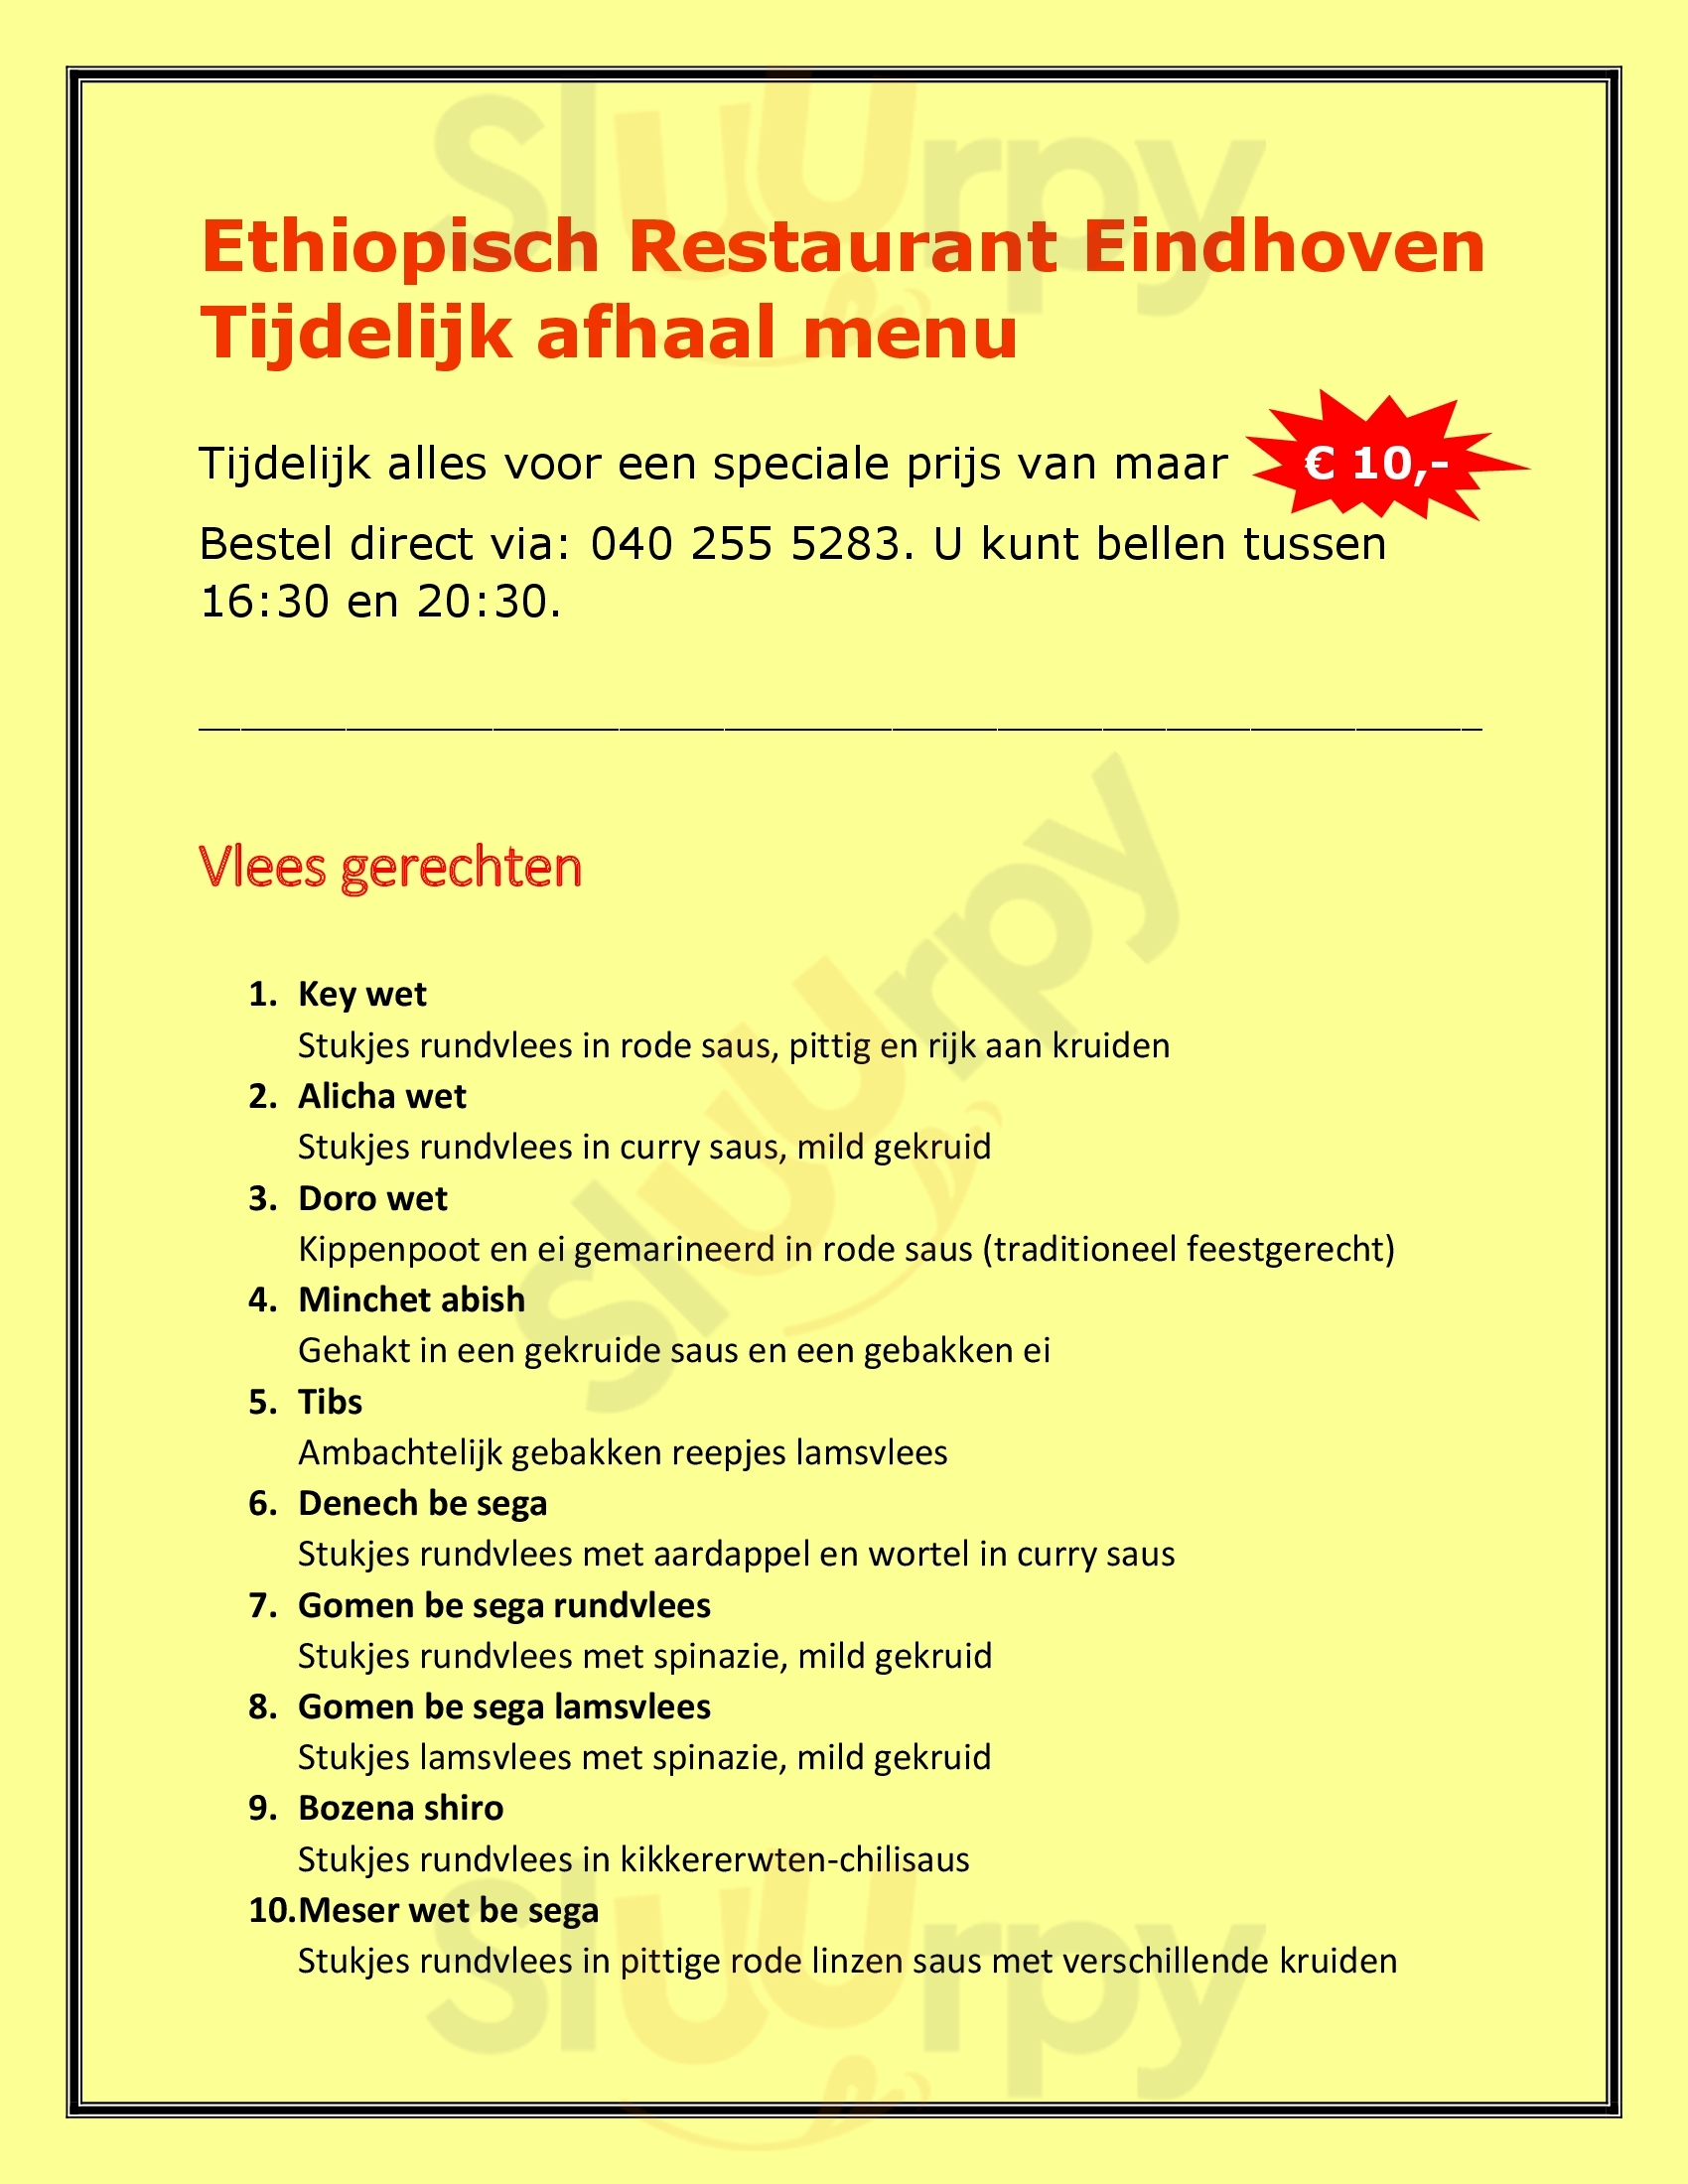 Ethiopisch Restaurant Eindhoven Menu - 1